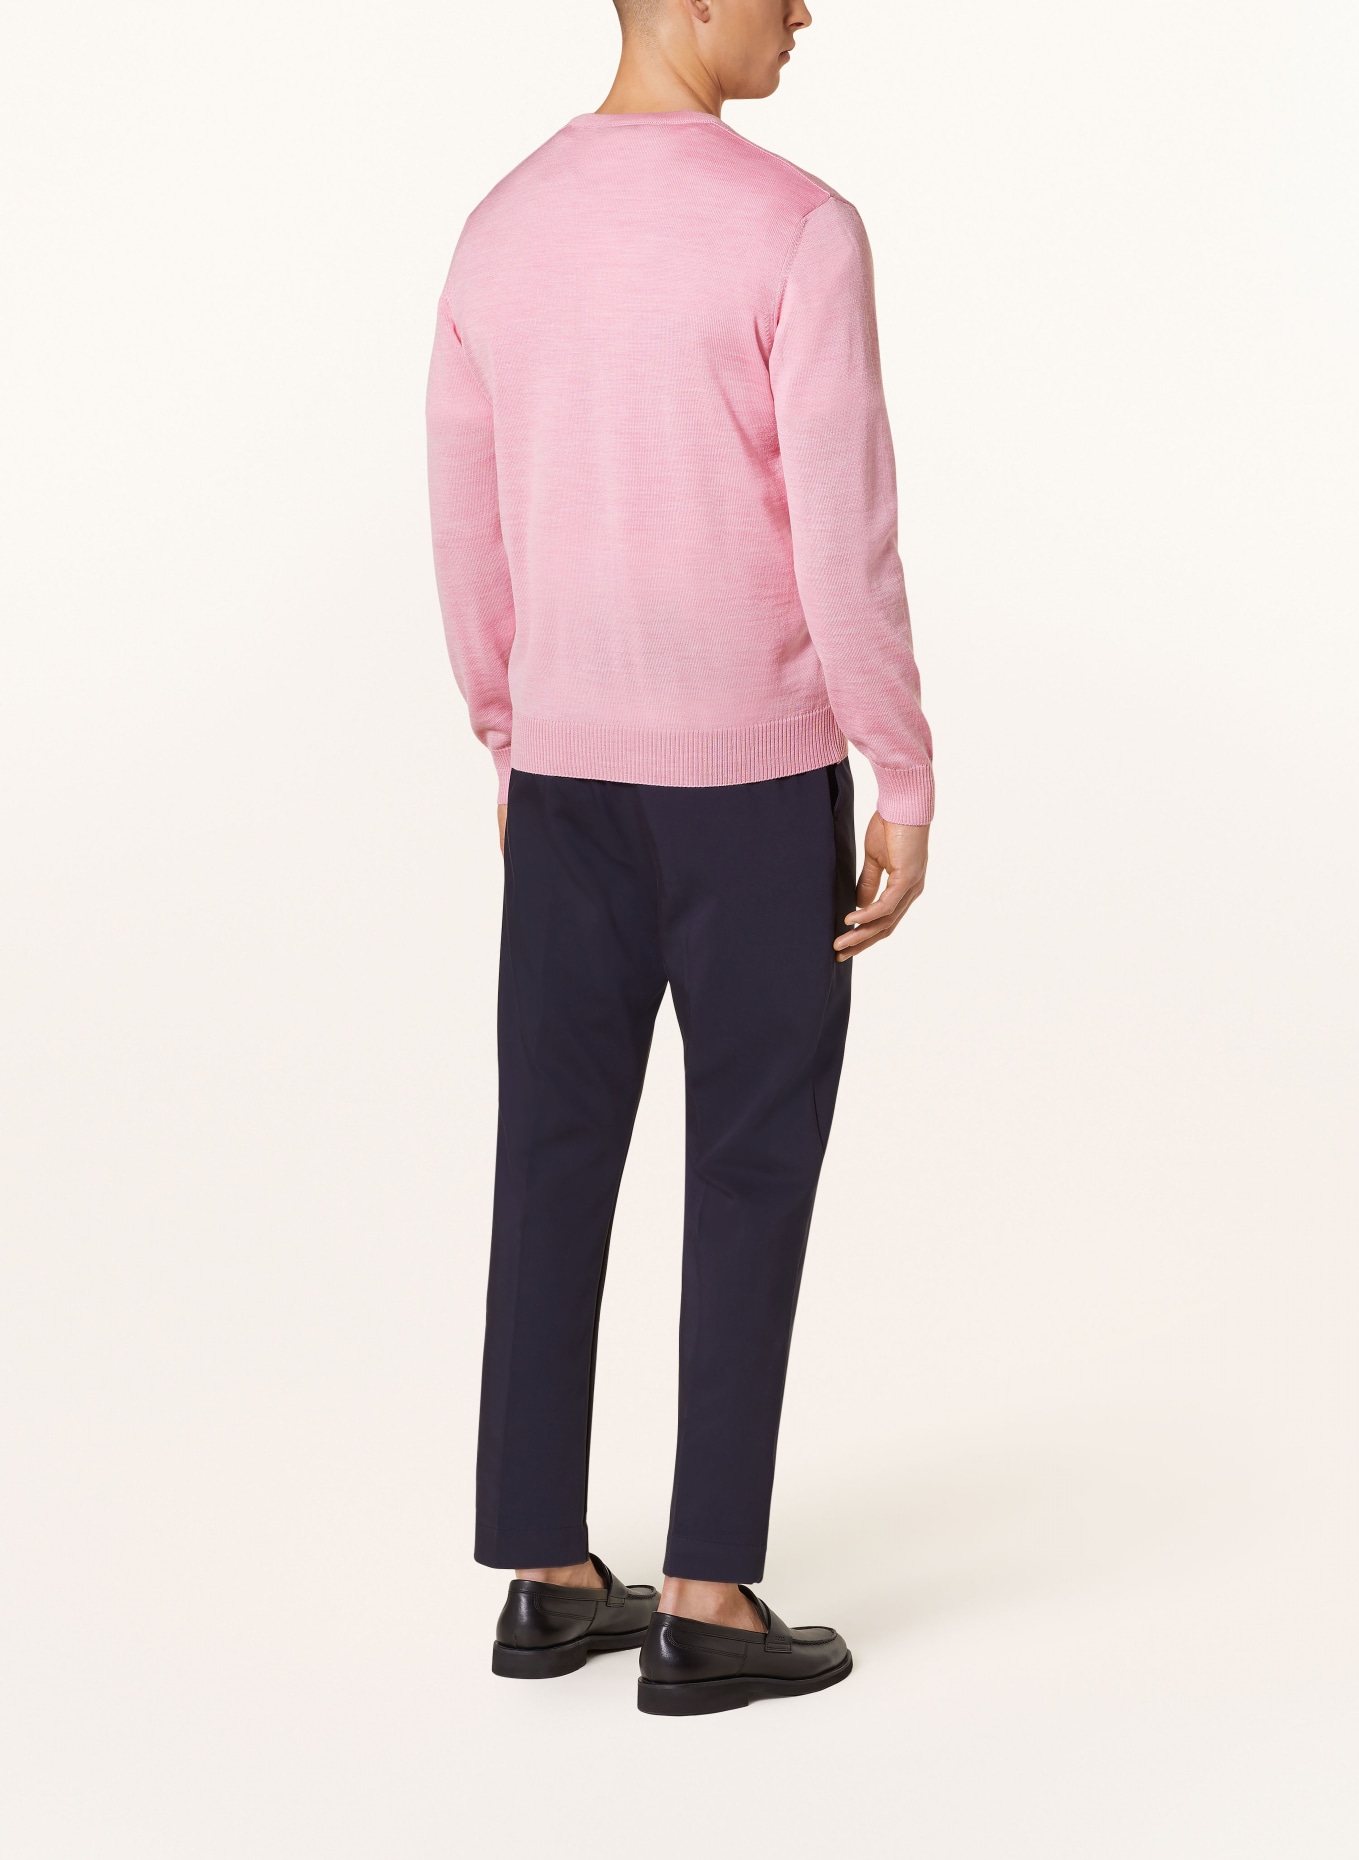 MAERZ MUENCHEN Pullover, Farbe: ROSA (Bild 3)